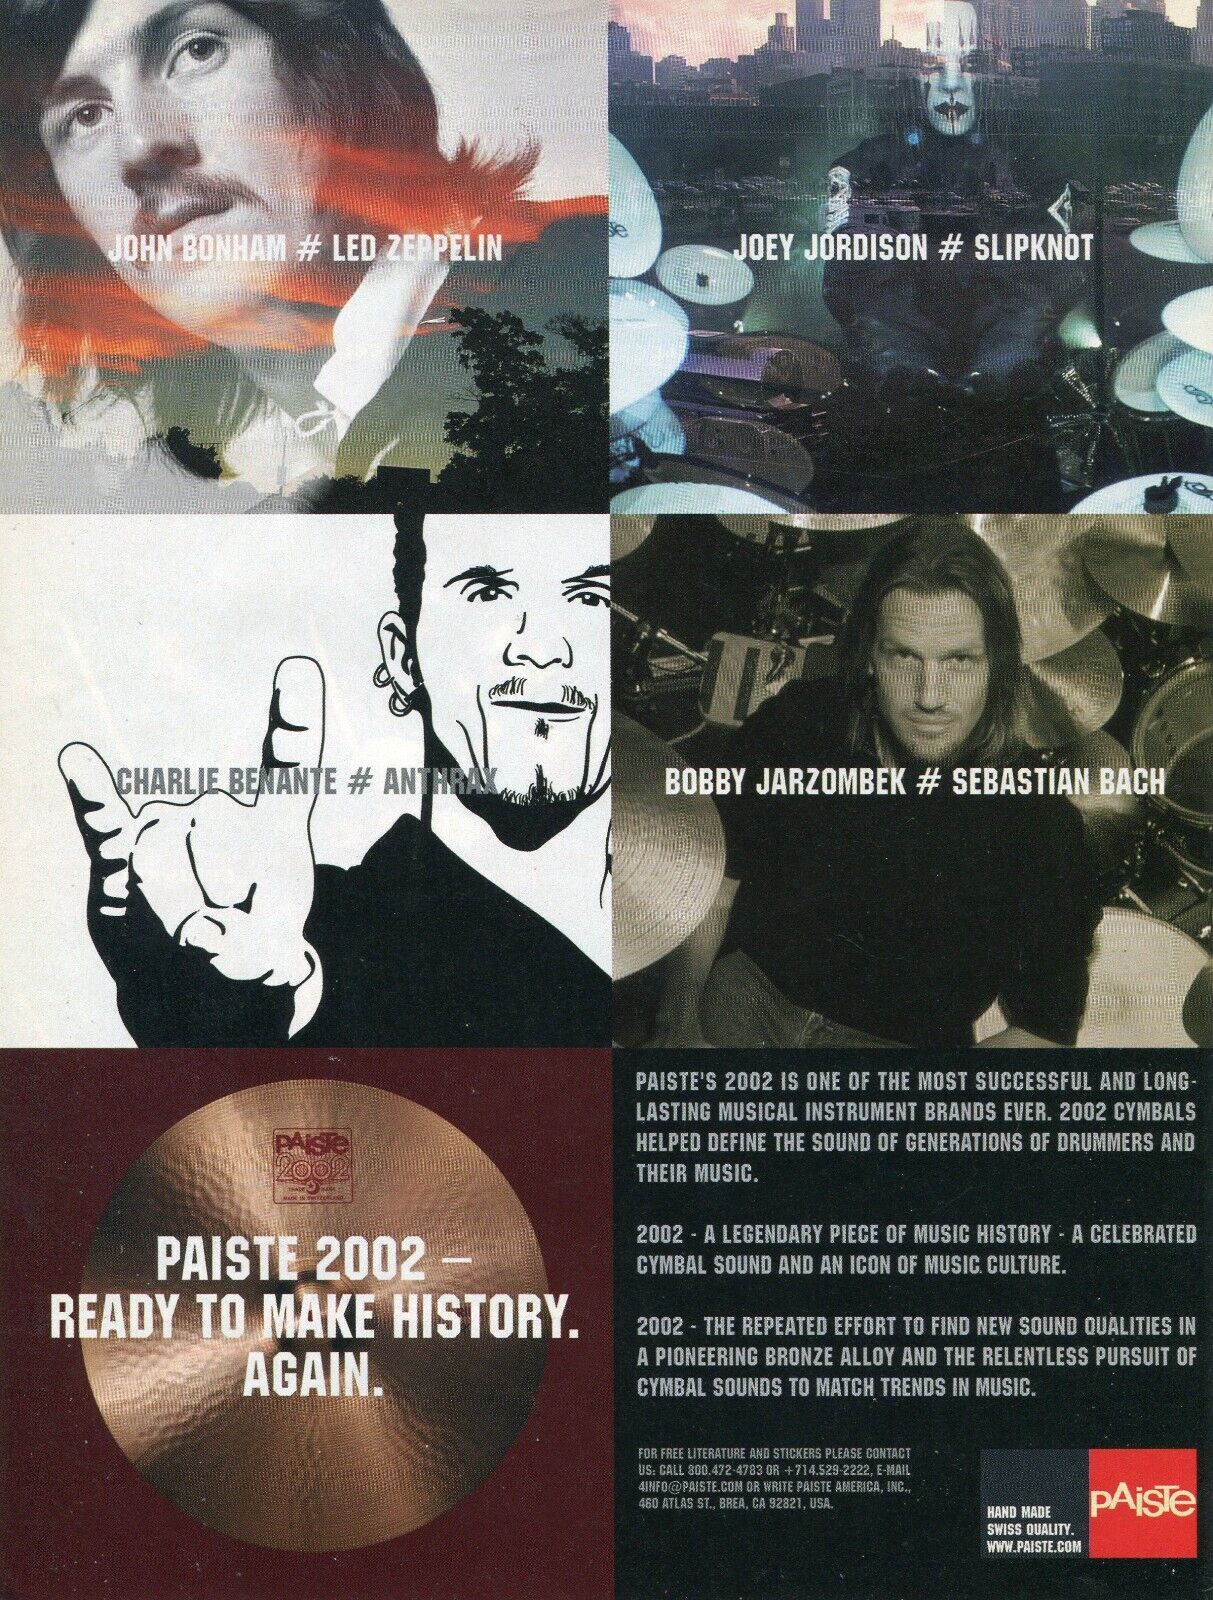 2005 Print Ad Paiste 2002 Drum Cymbals John Bonham Joey Jordison Bobby Jarzombek